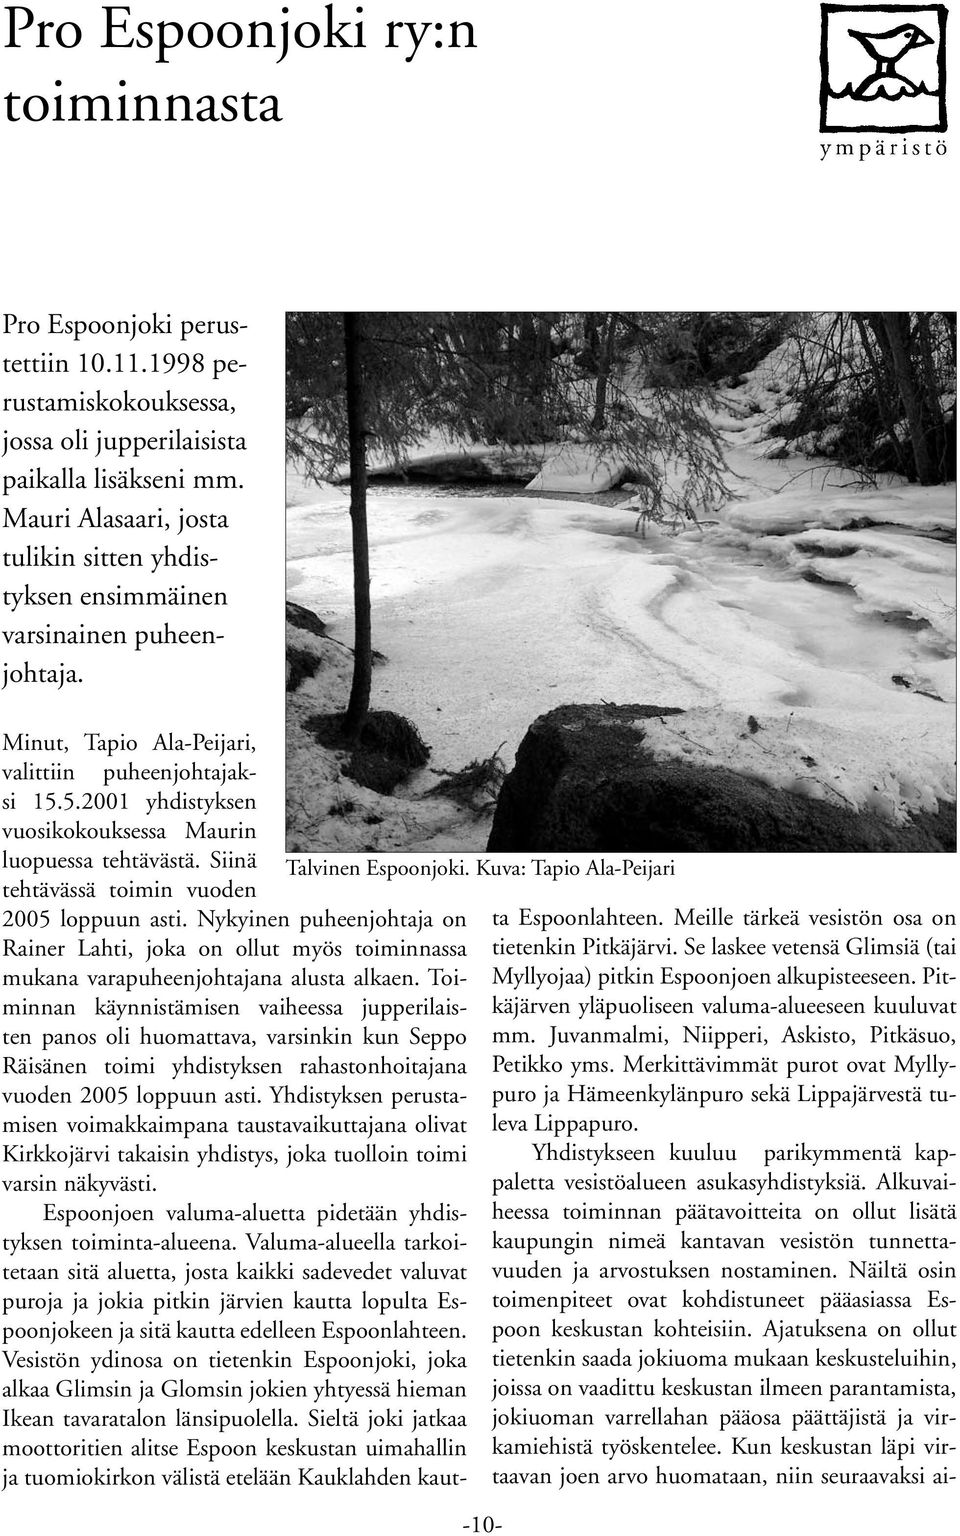 5.2001 yhdistyksen vuosikokouksessa Maurin luopuessa tehtävästä. Siinä Talvinen Espoonjoki. Kuva: Tapio Ala-Peijari tehtävässä toimin vuoden 2005 loppuun asti.